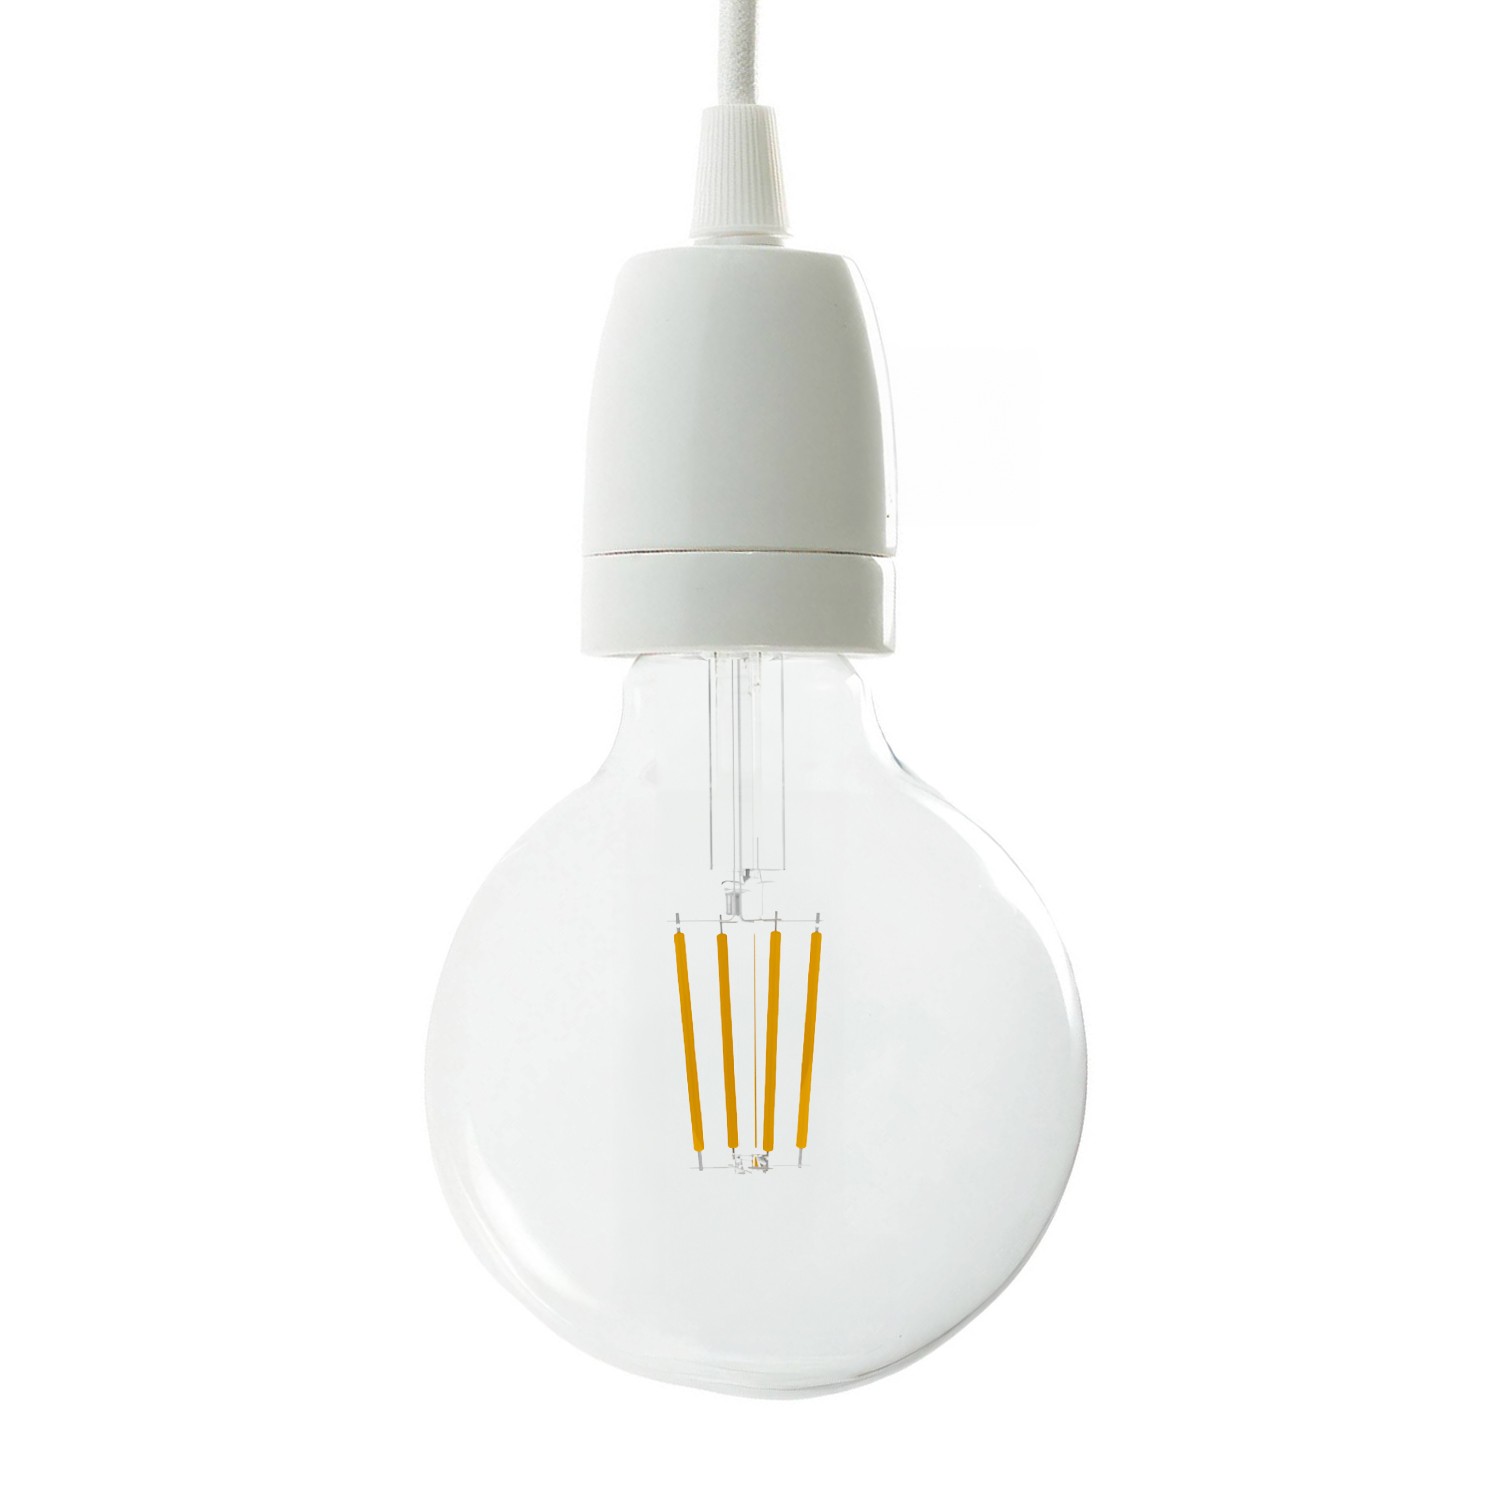 E14 Lampen Fassung mit Kabel Schalter und Stecker, Textil weiß